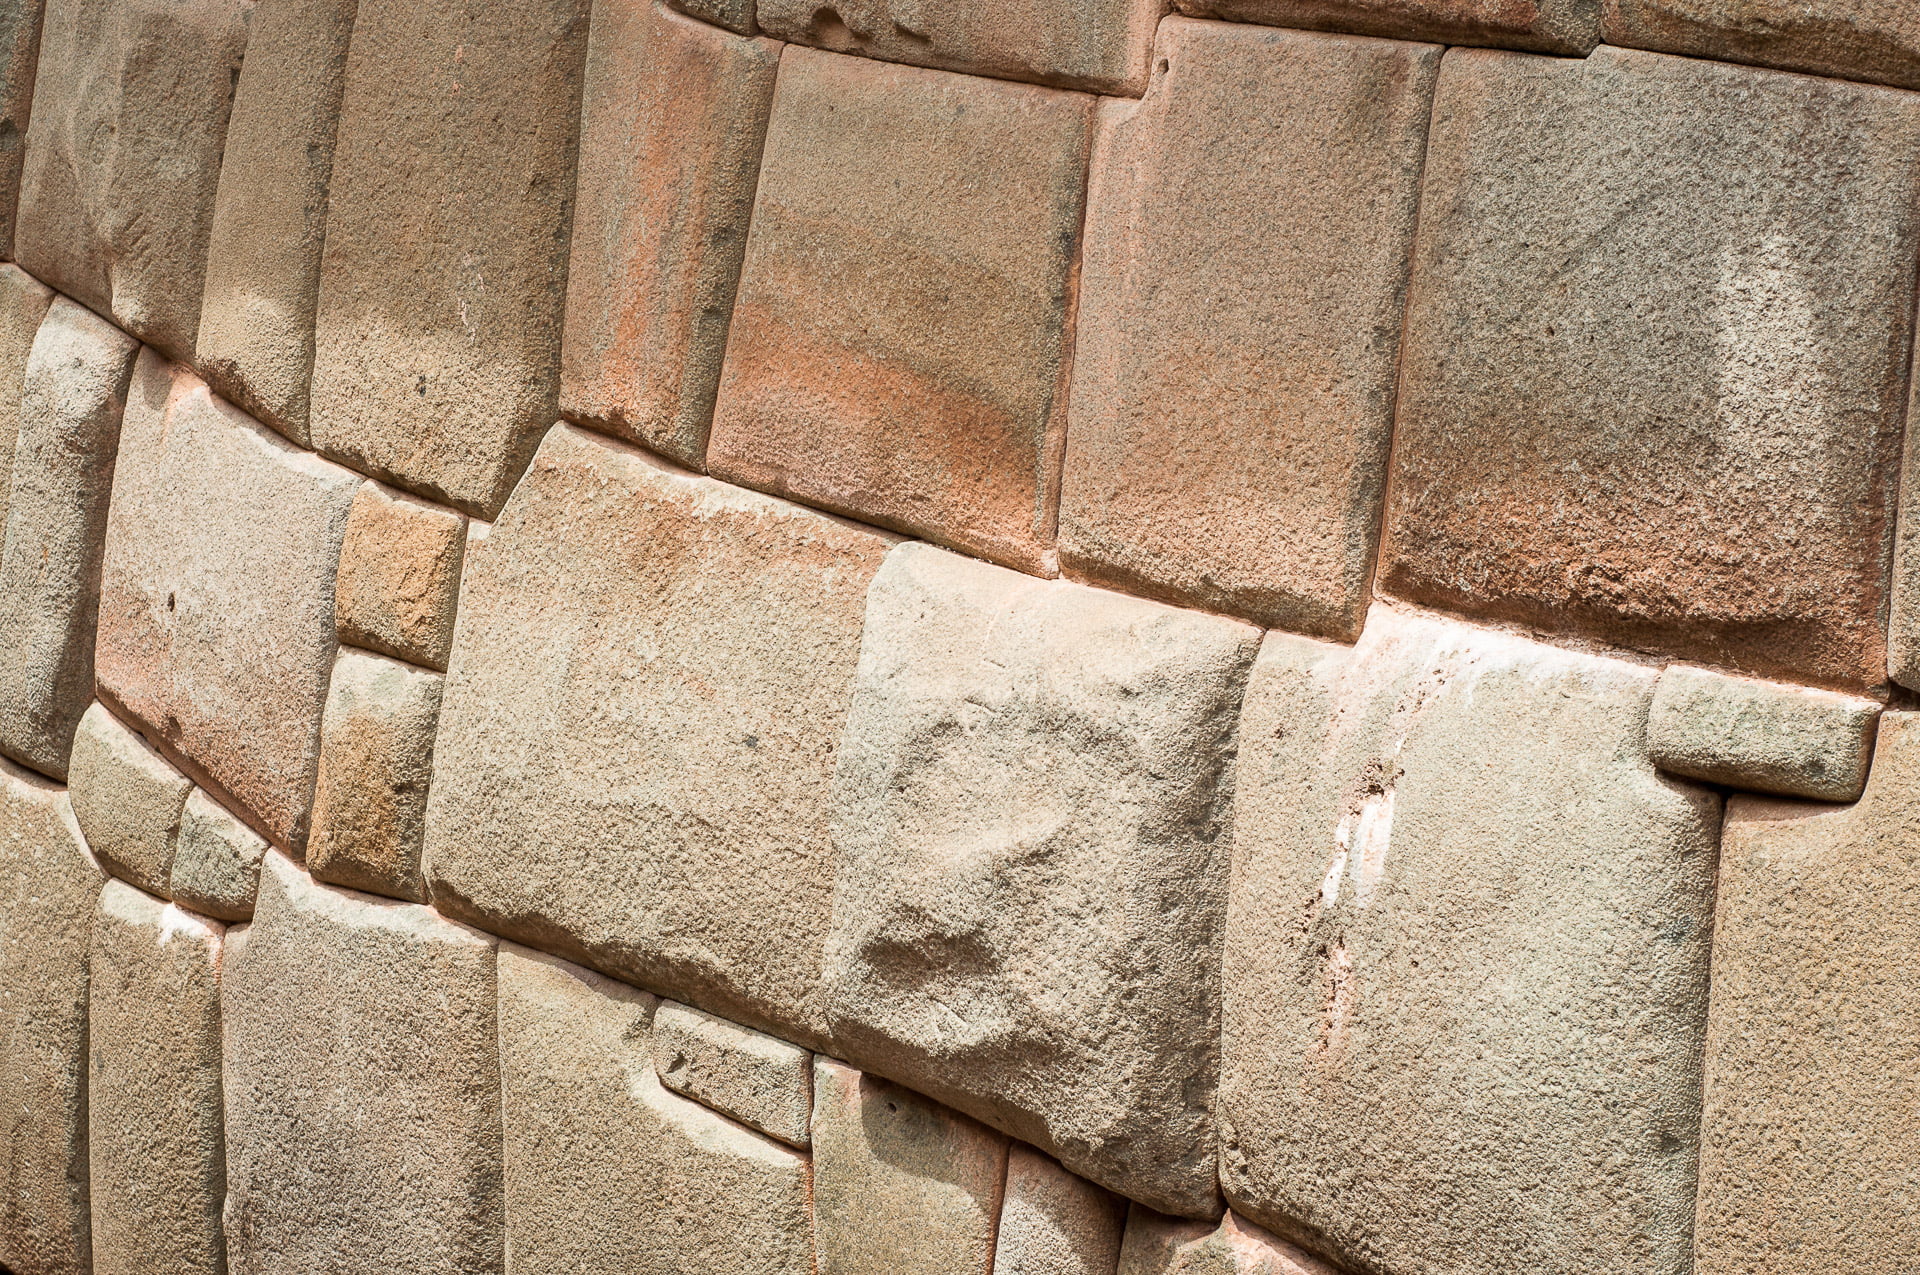 Murs incas tarabiscotés